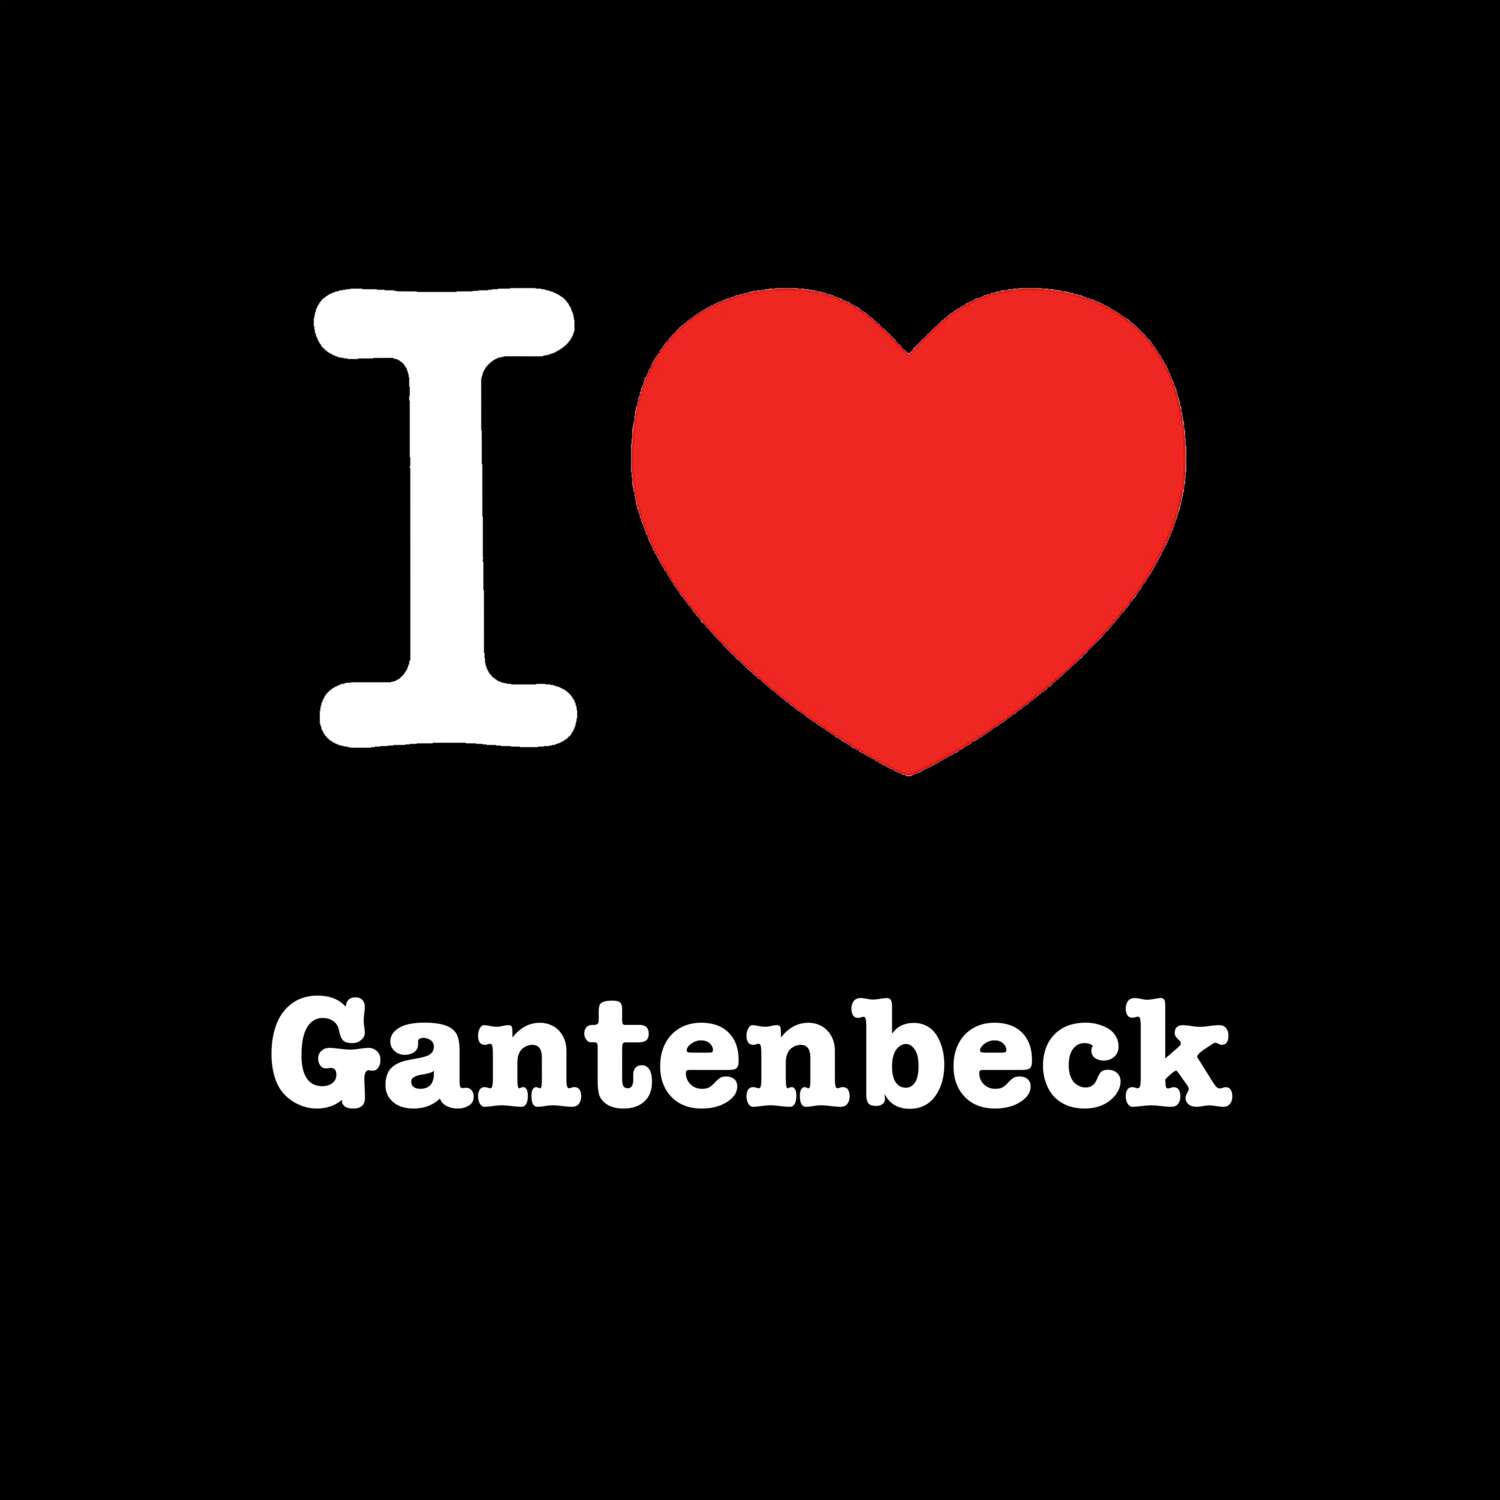 Gantenbeck T-Shirt »I love«